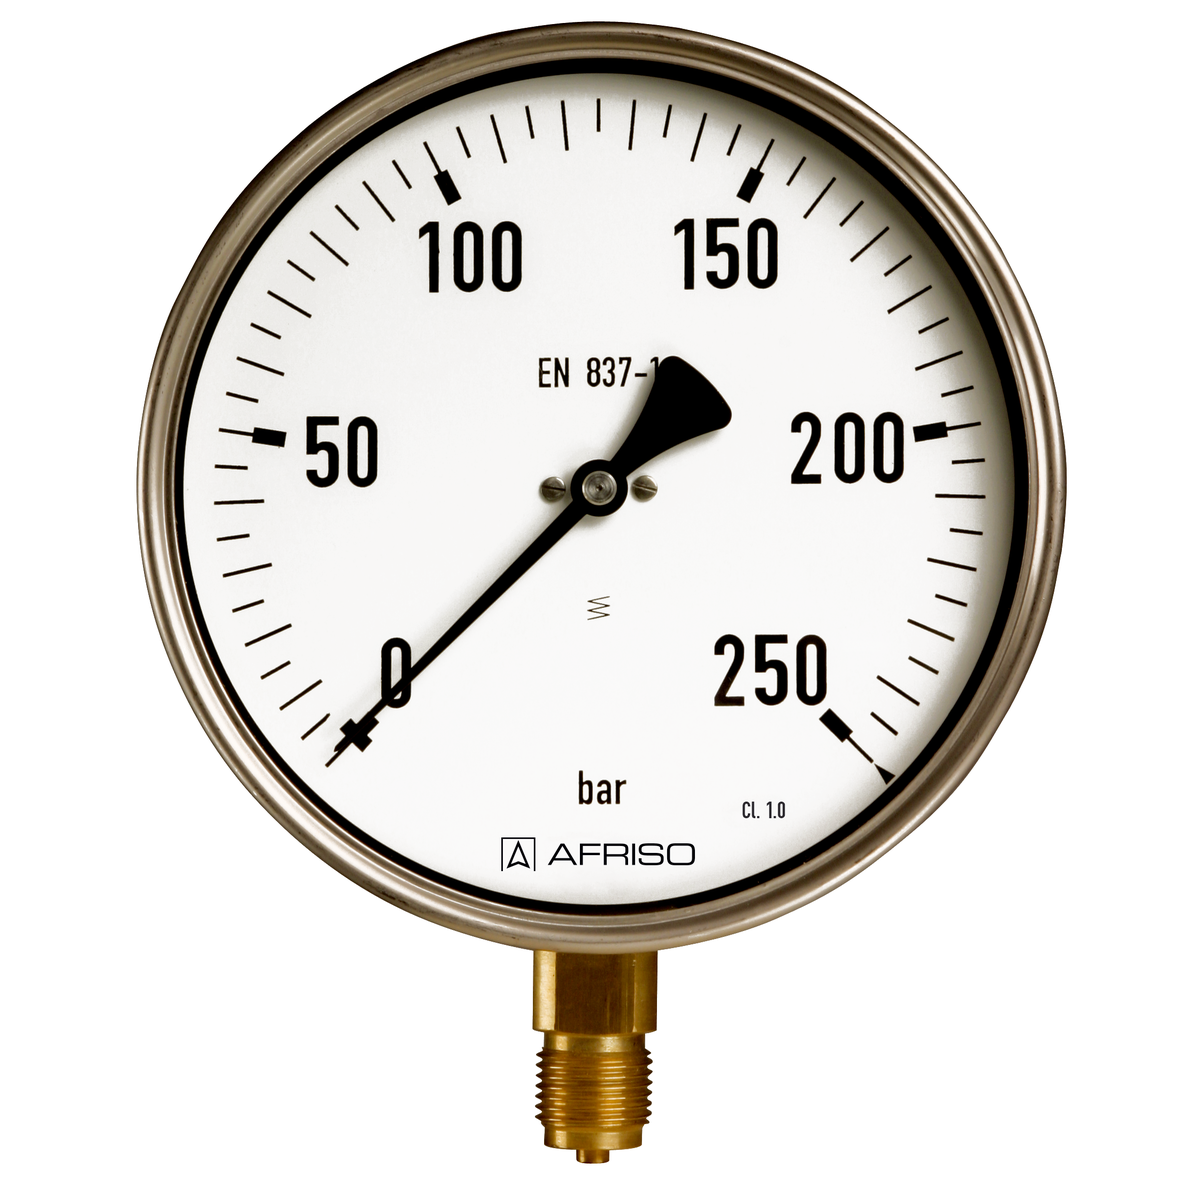 2100-T, 2160-T Industrimanometer